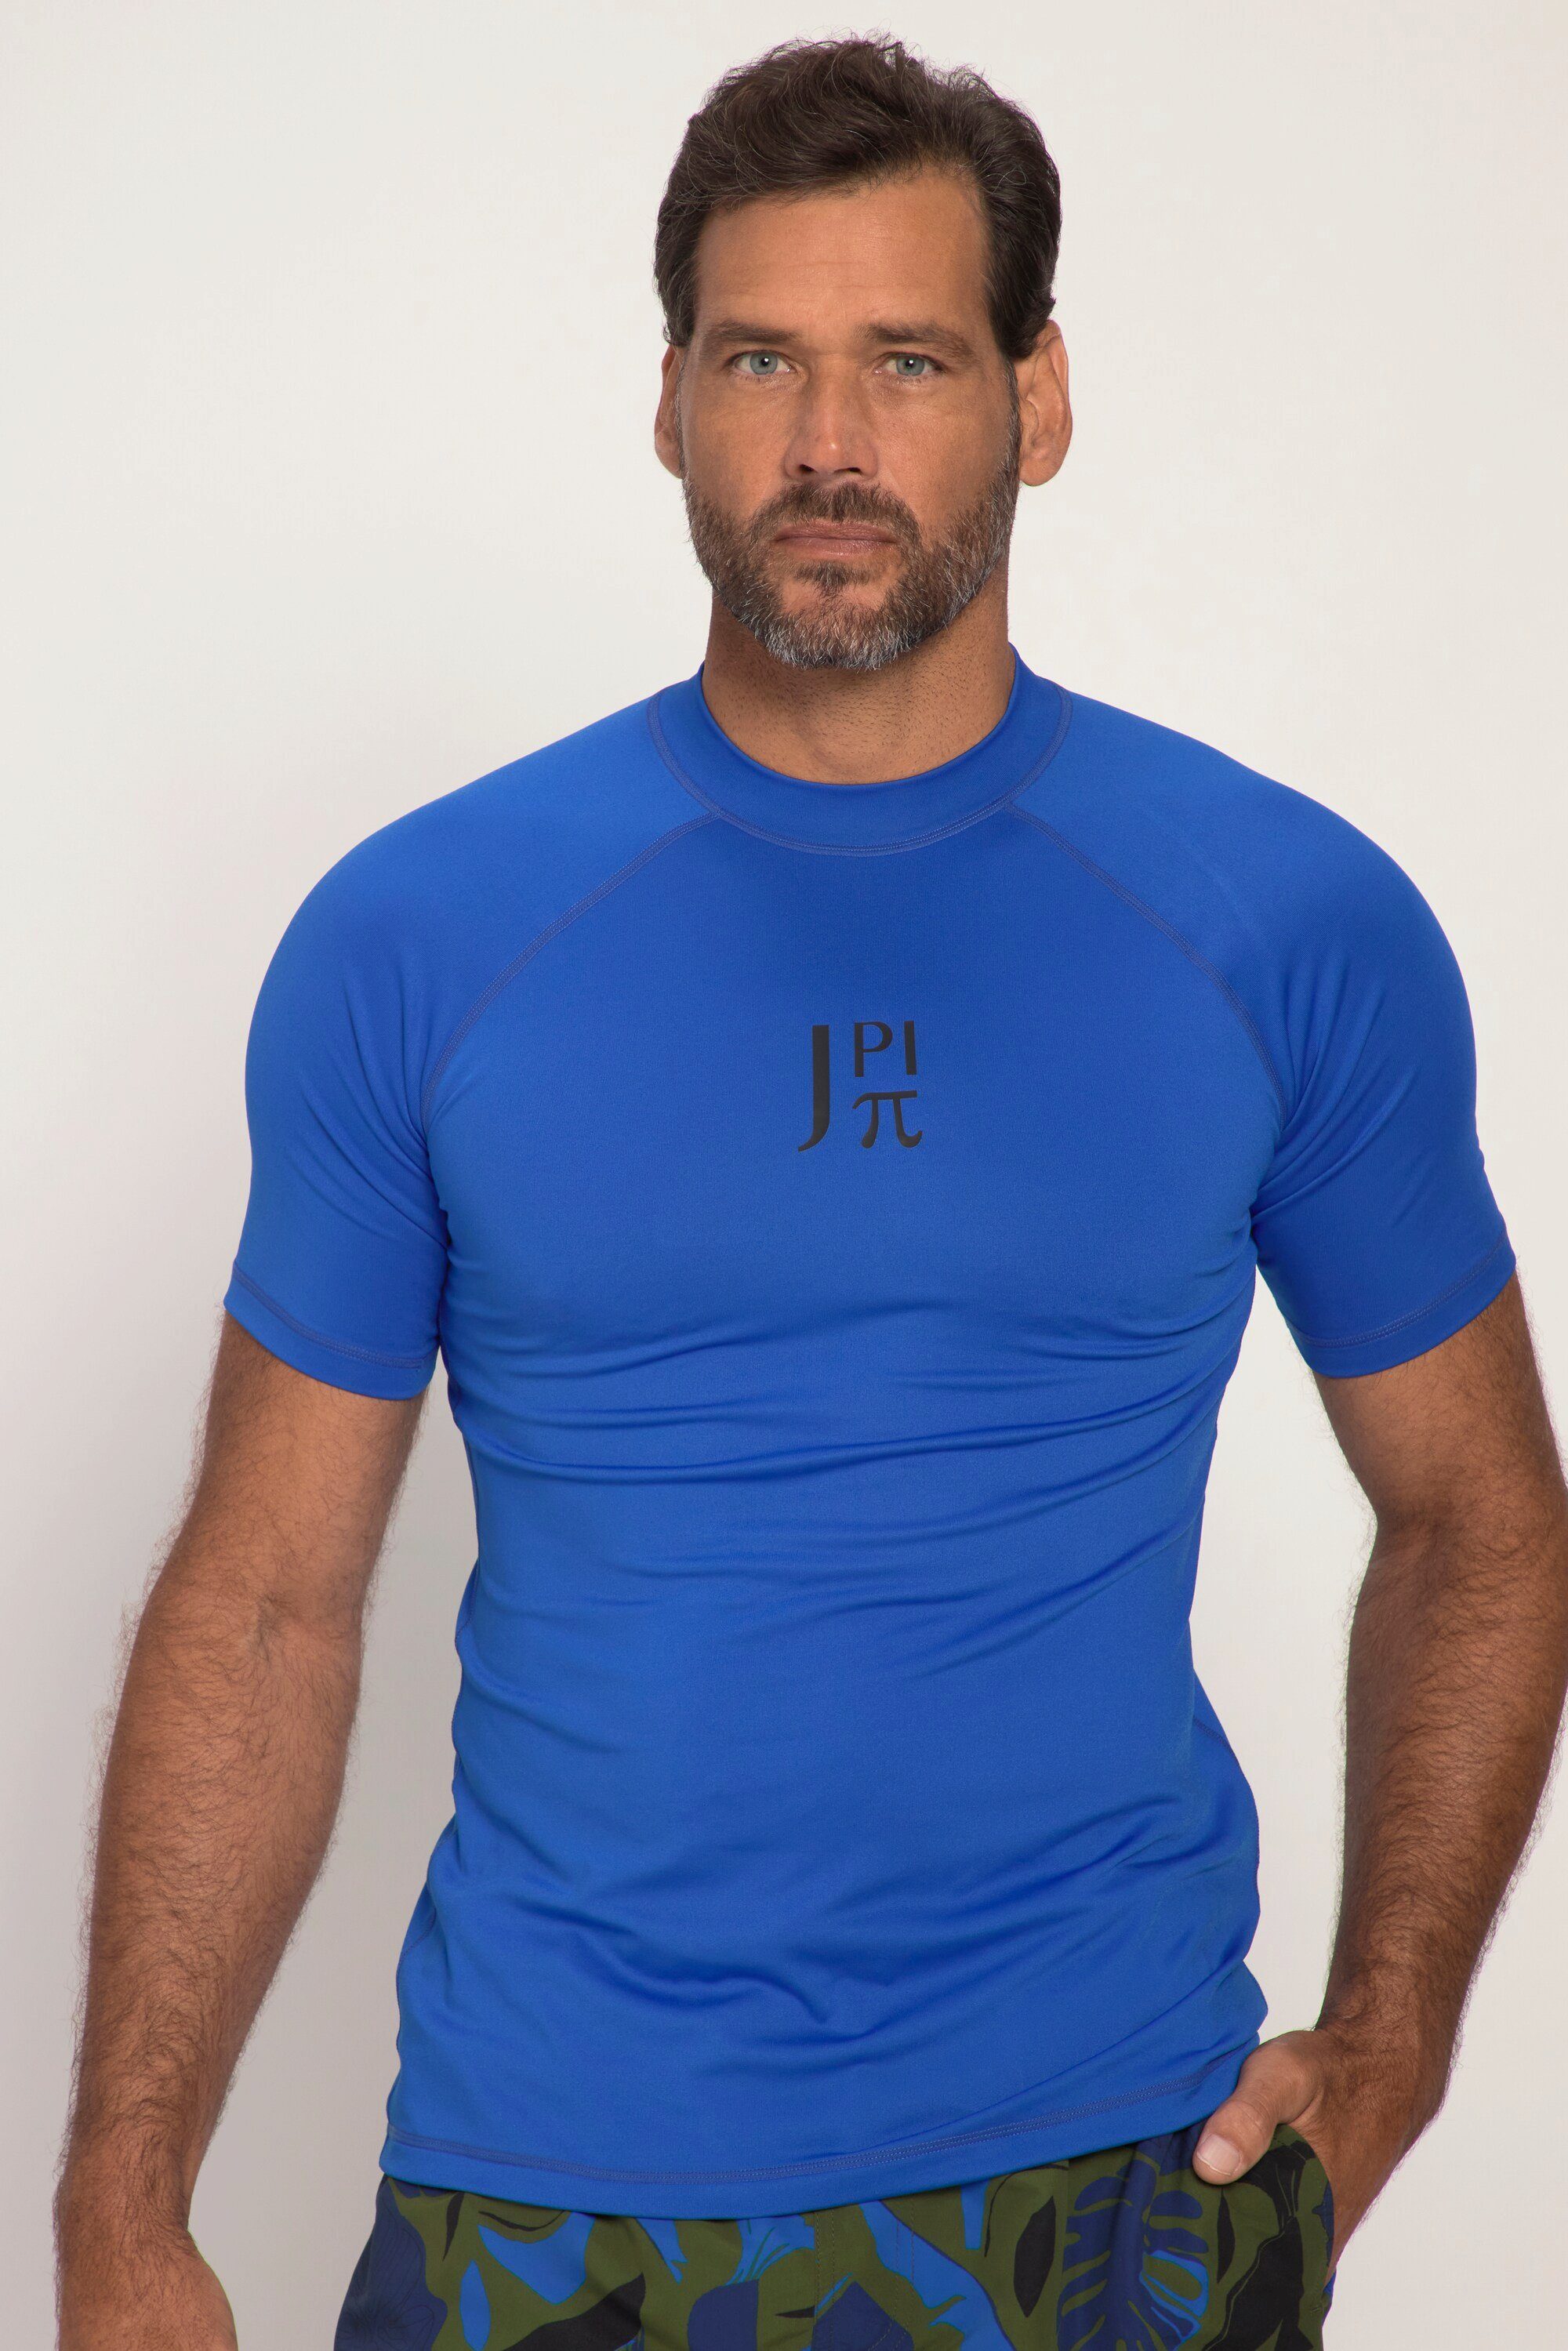 JP1880 T-Shirt Schwimmshirt Halbarm Stehkragen UV-Schutz blau